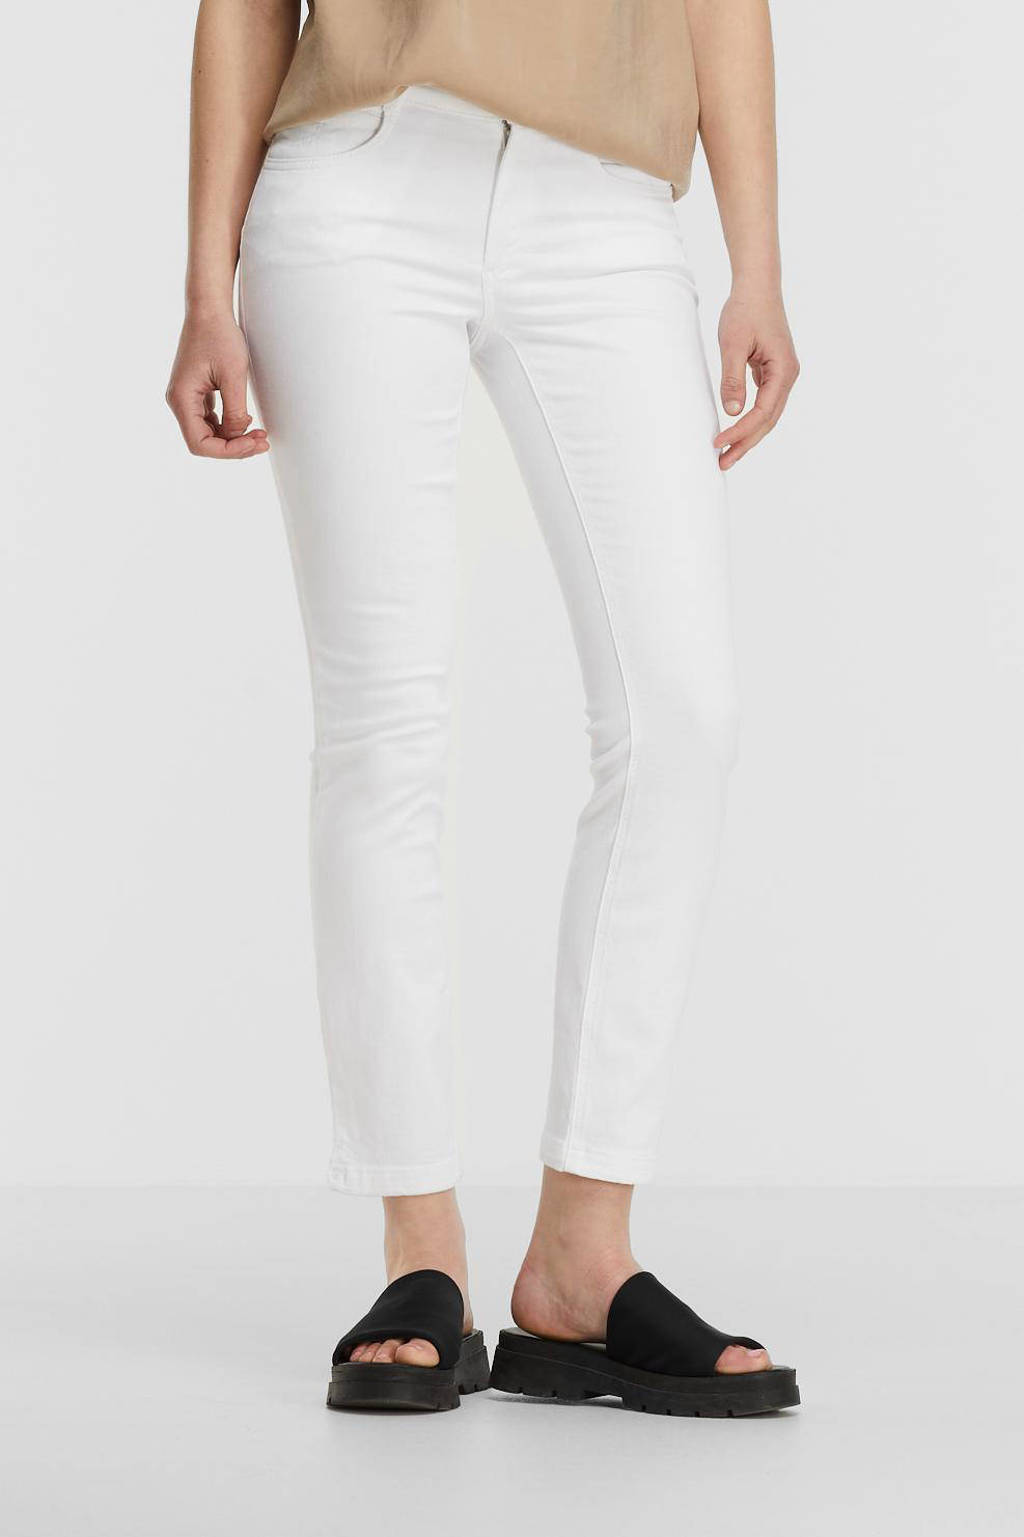 Witte dames gardeur slim fit jeans Vicky743 van stretchdenim met regular waist